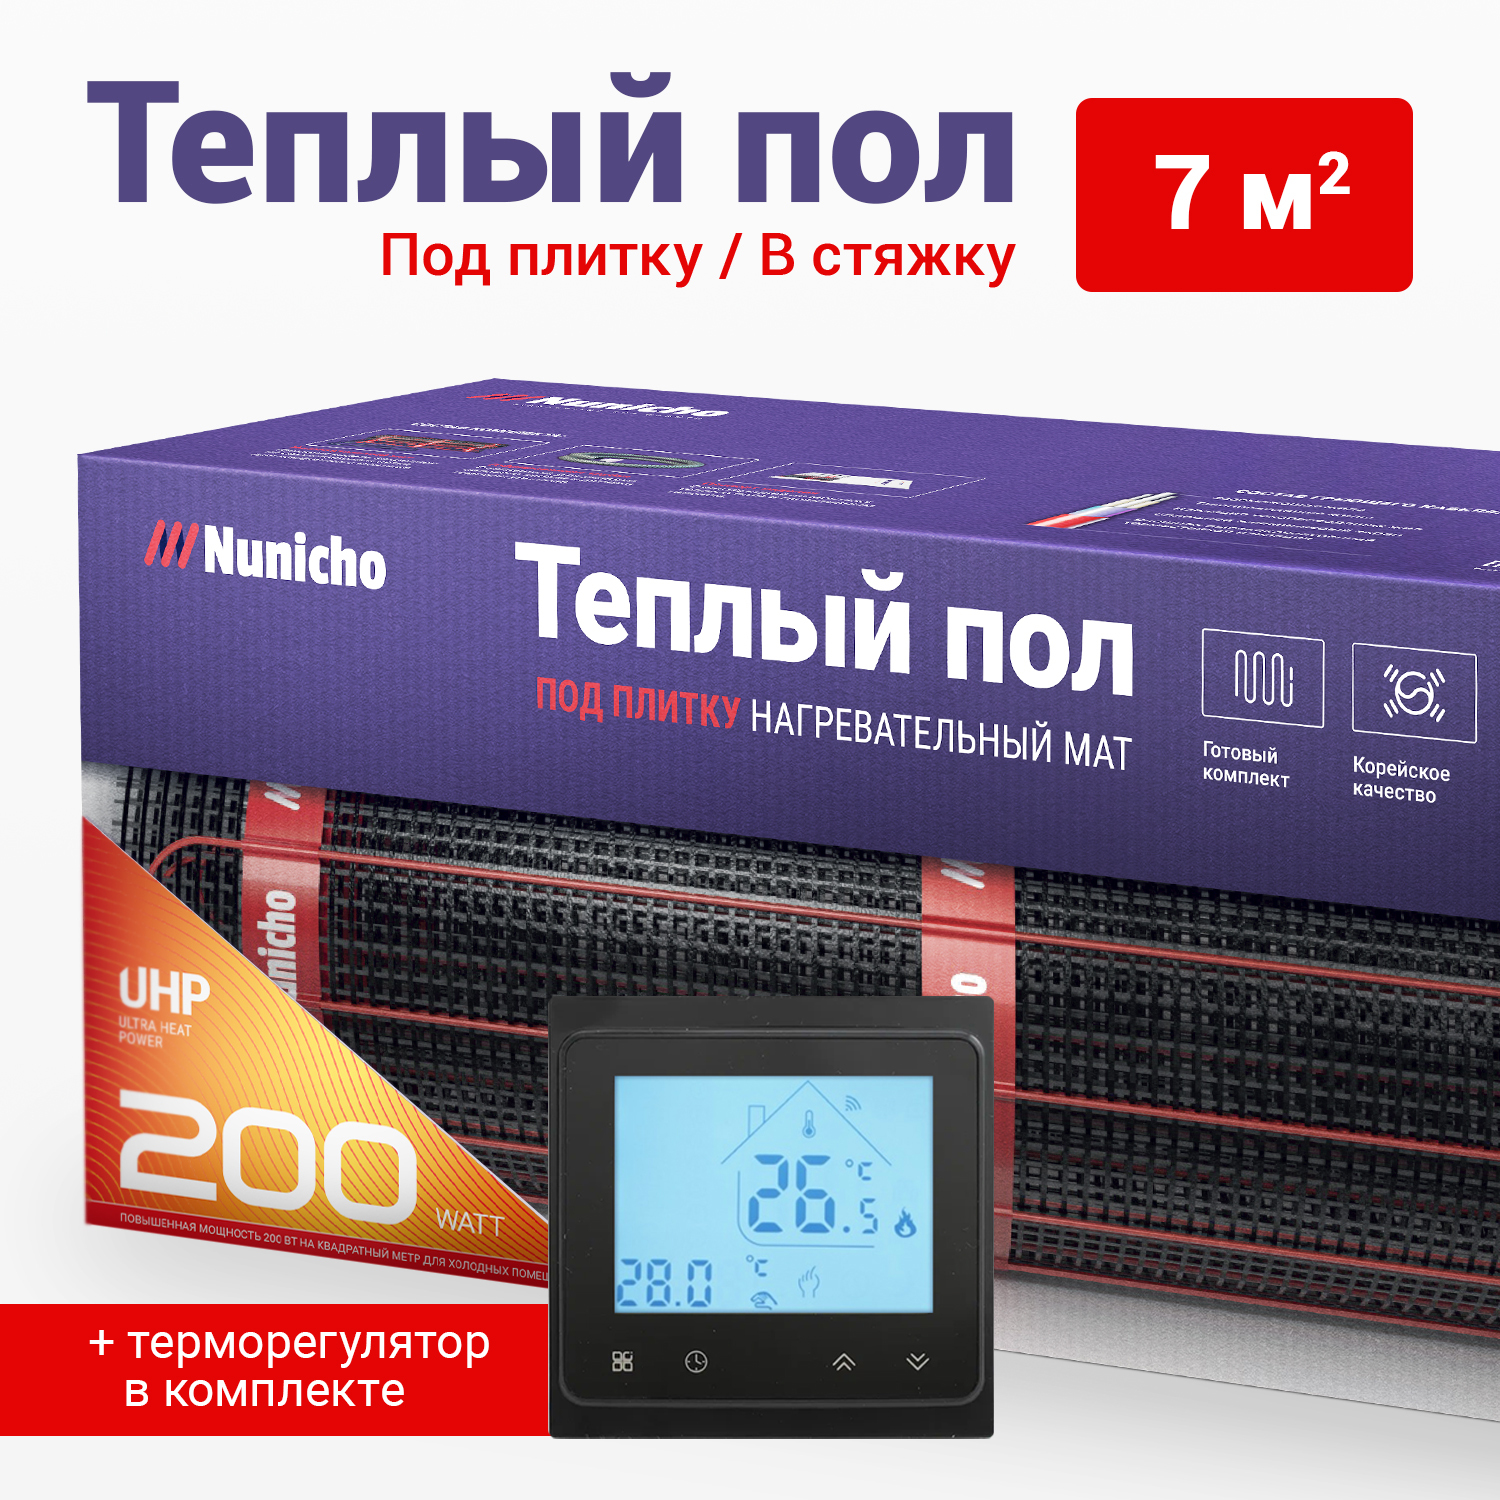 фото Теплый пол под плитку в стяжку nunicho 7 м2, 200 вт/м2 со smart-терморегулятором черным